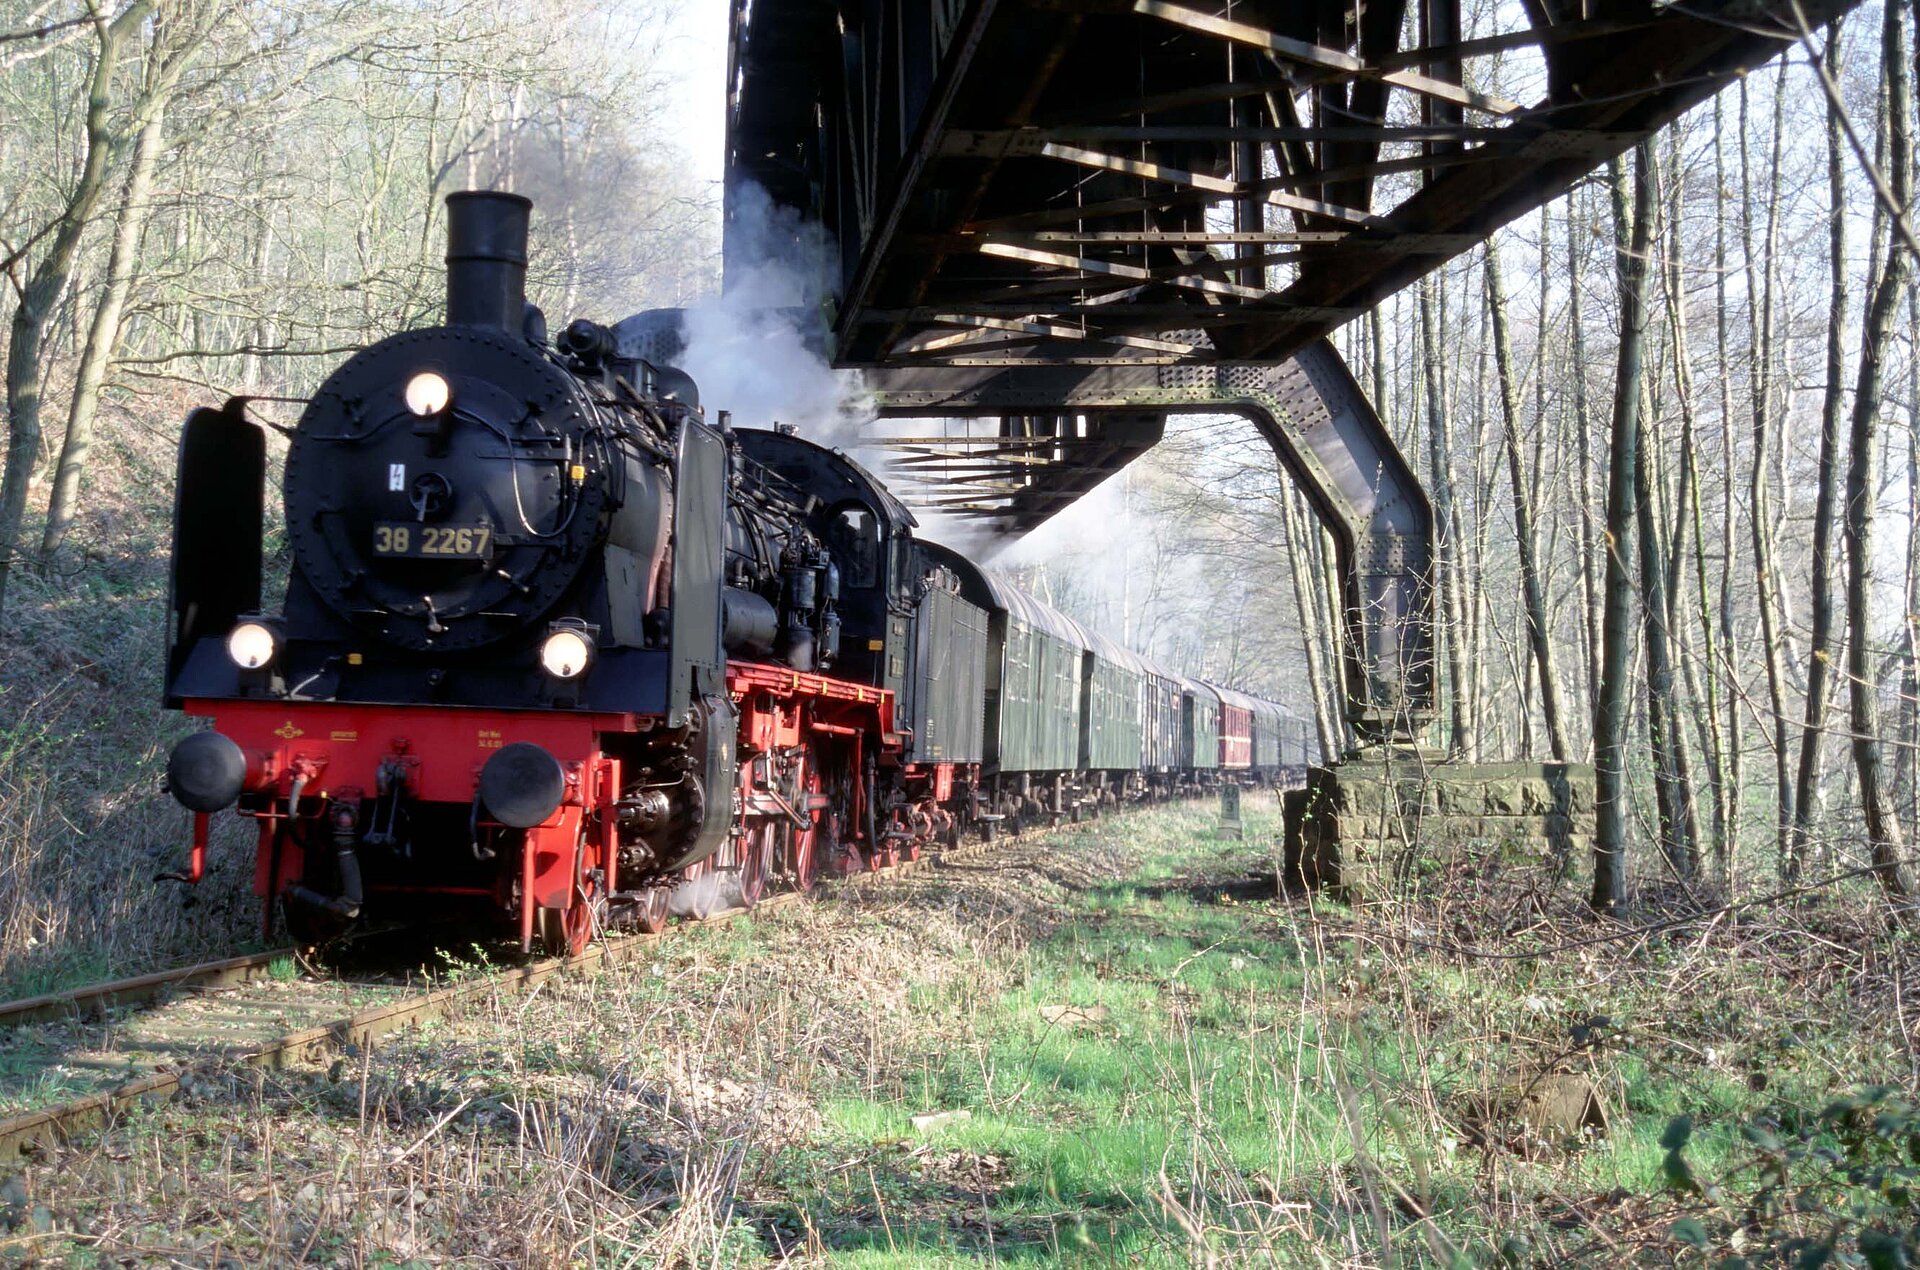 Die Fahrt mit dem Dampflokomotivzug oder im historischen Schienenbus vom Eisenbahnmuseum Bochum-Dahlhausen über die Ruhrtalbahn gehört zu den landschaftlich schönsten Eisenbahnstrecken des Ruhrgebiets.